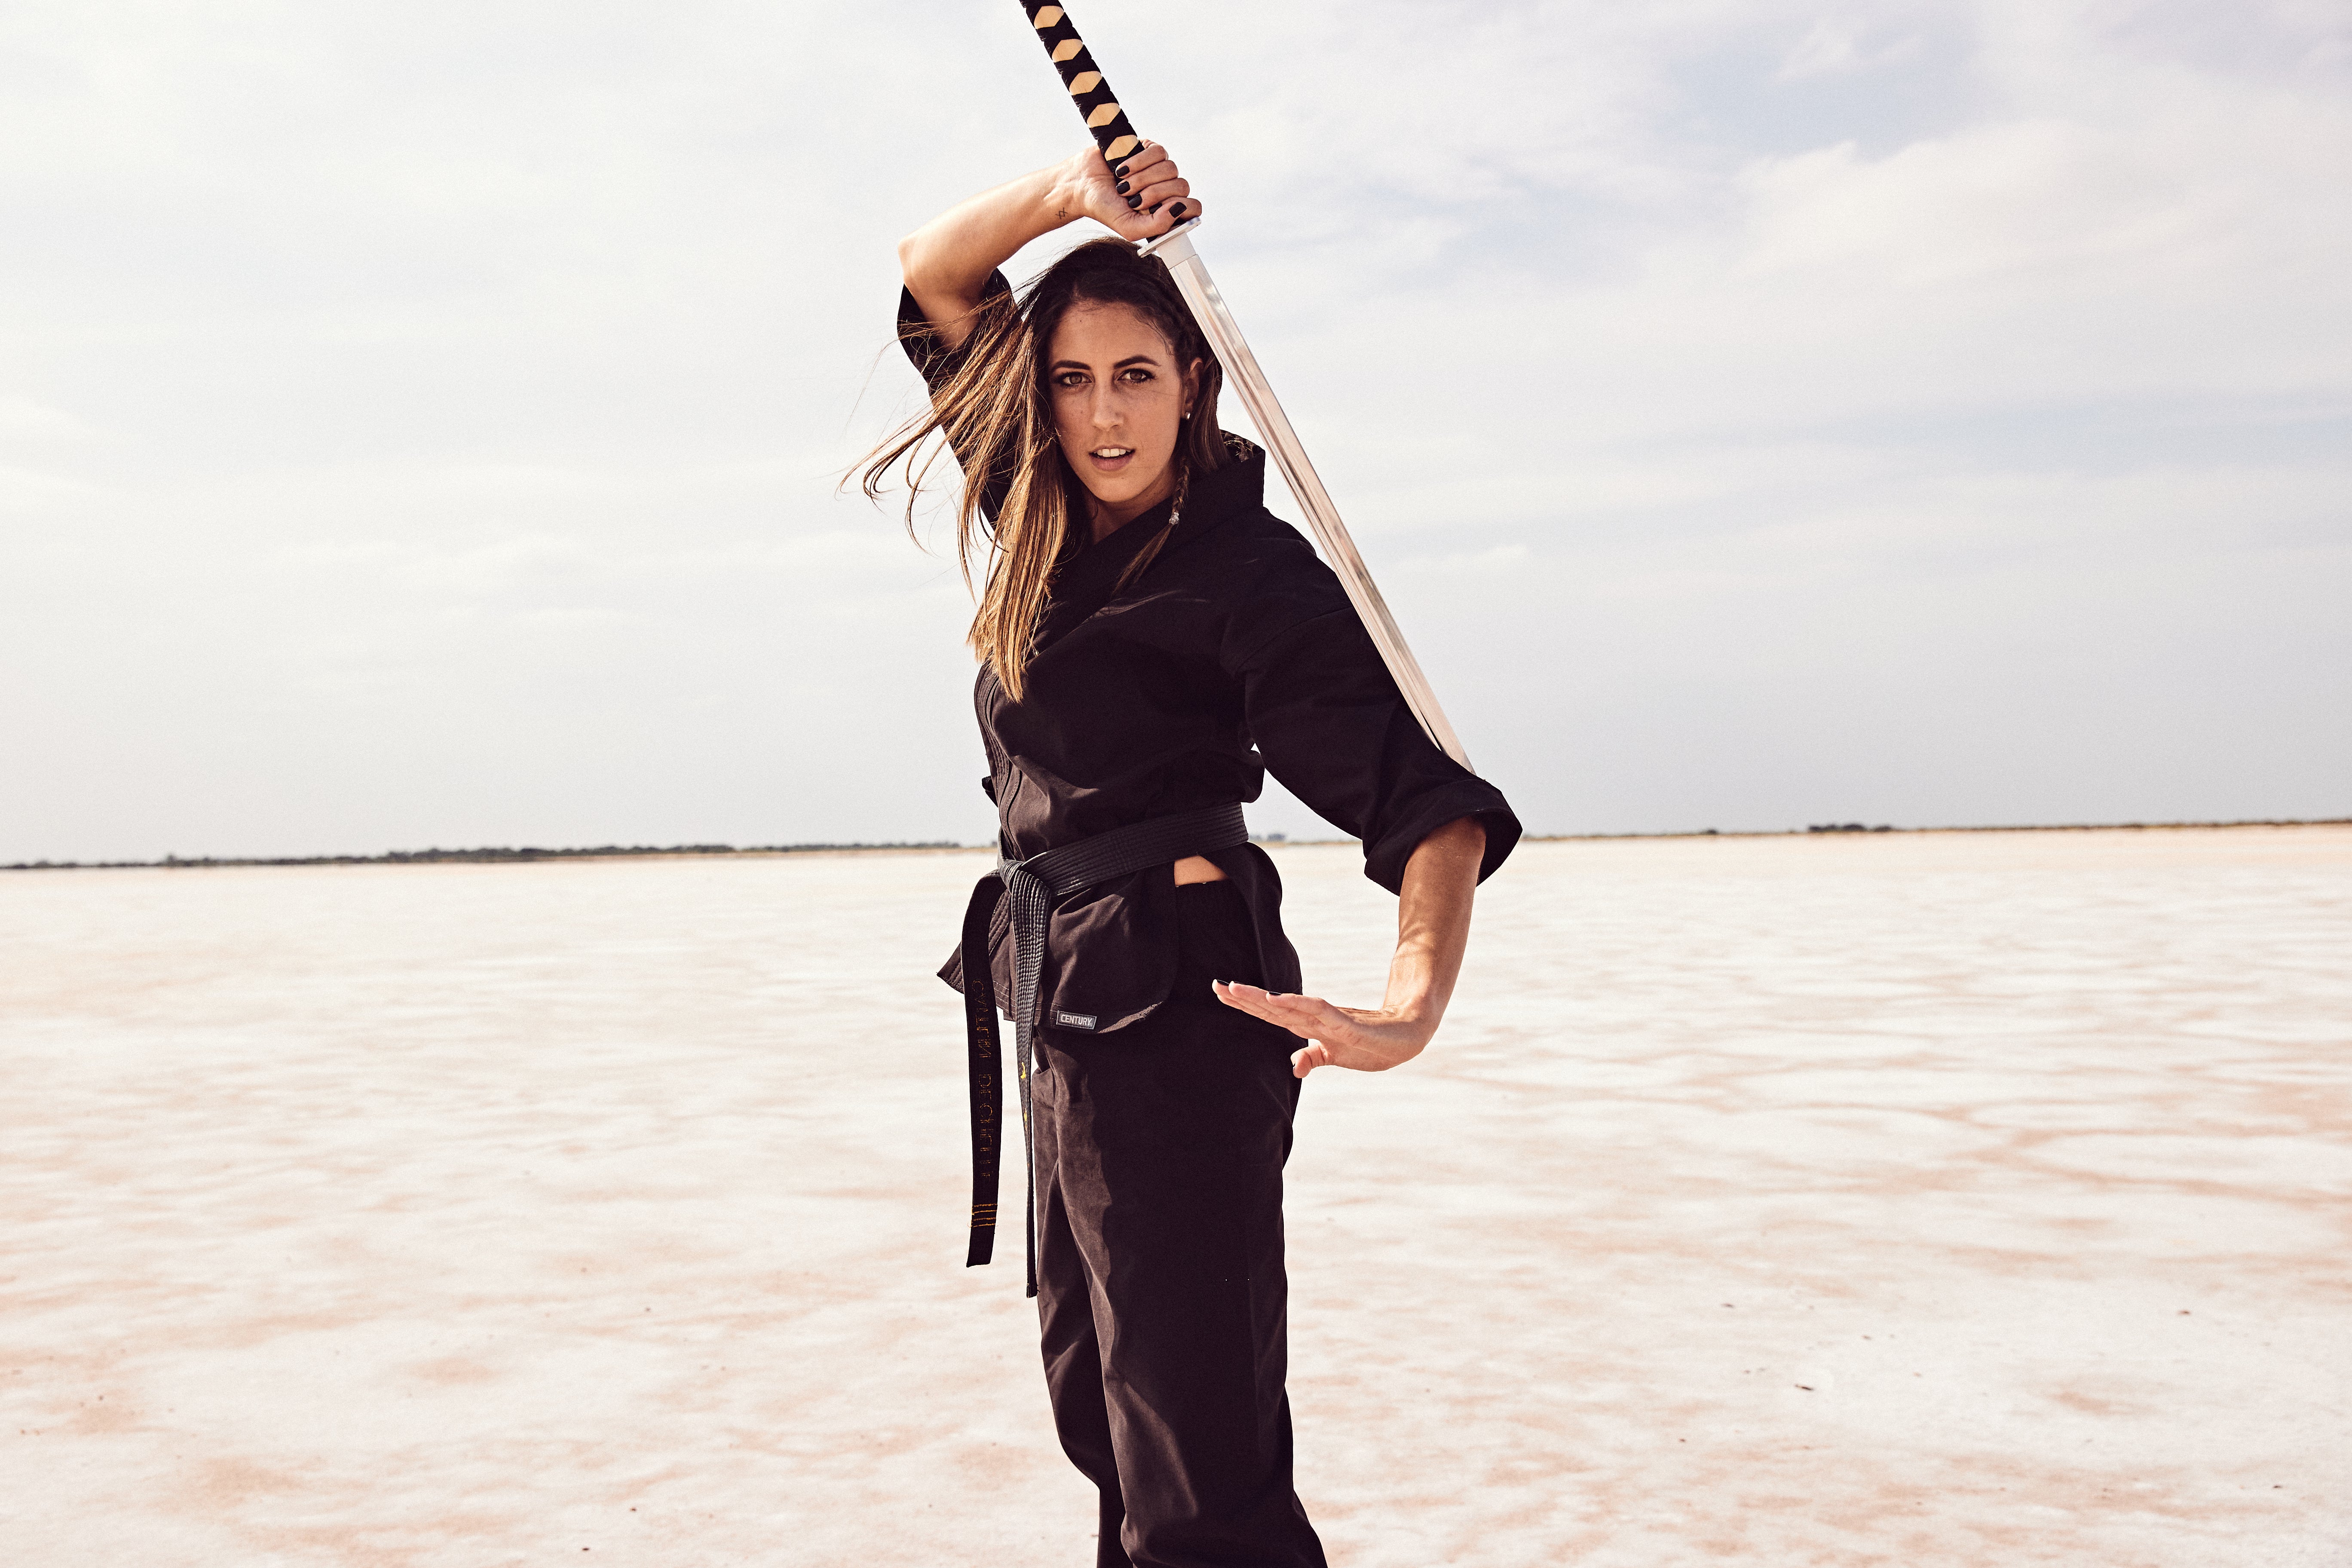 Caitlin Dechelle posing with sword on salt plains